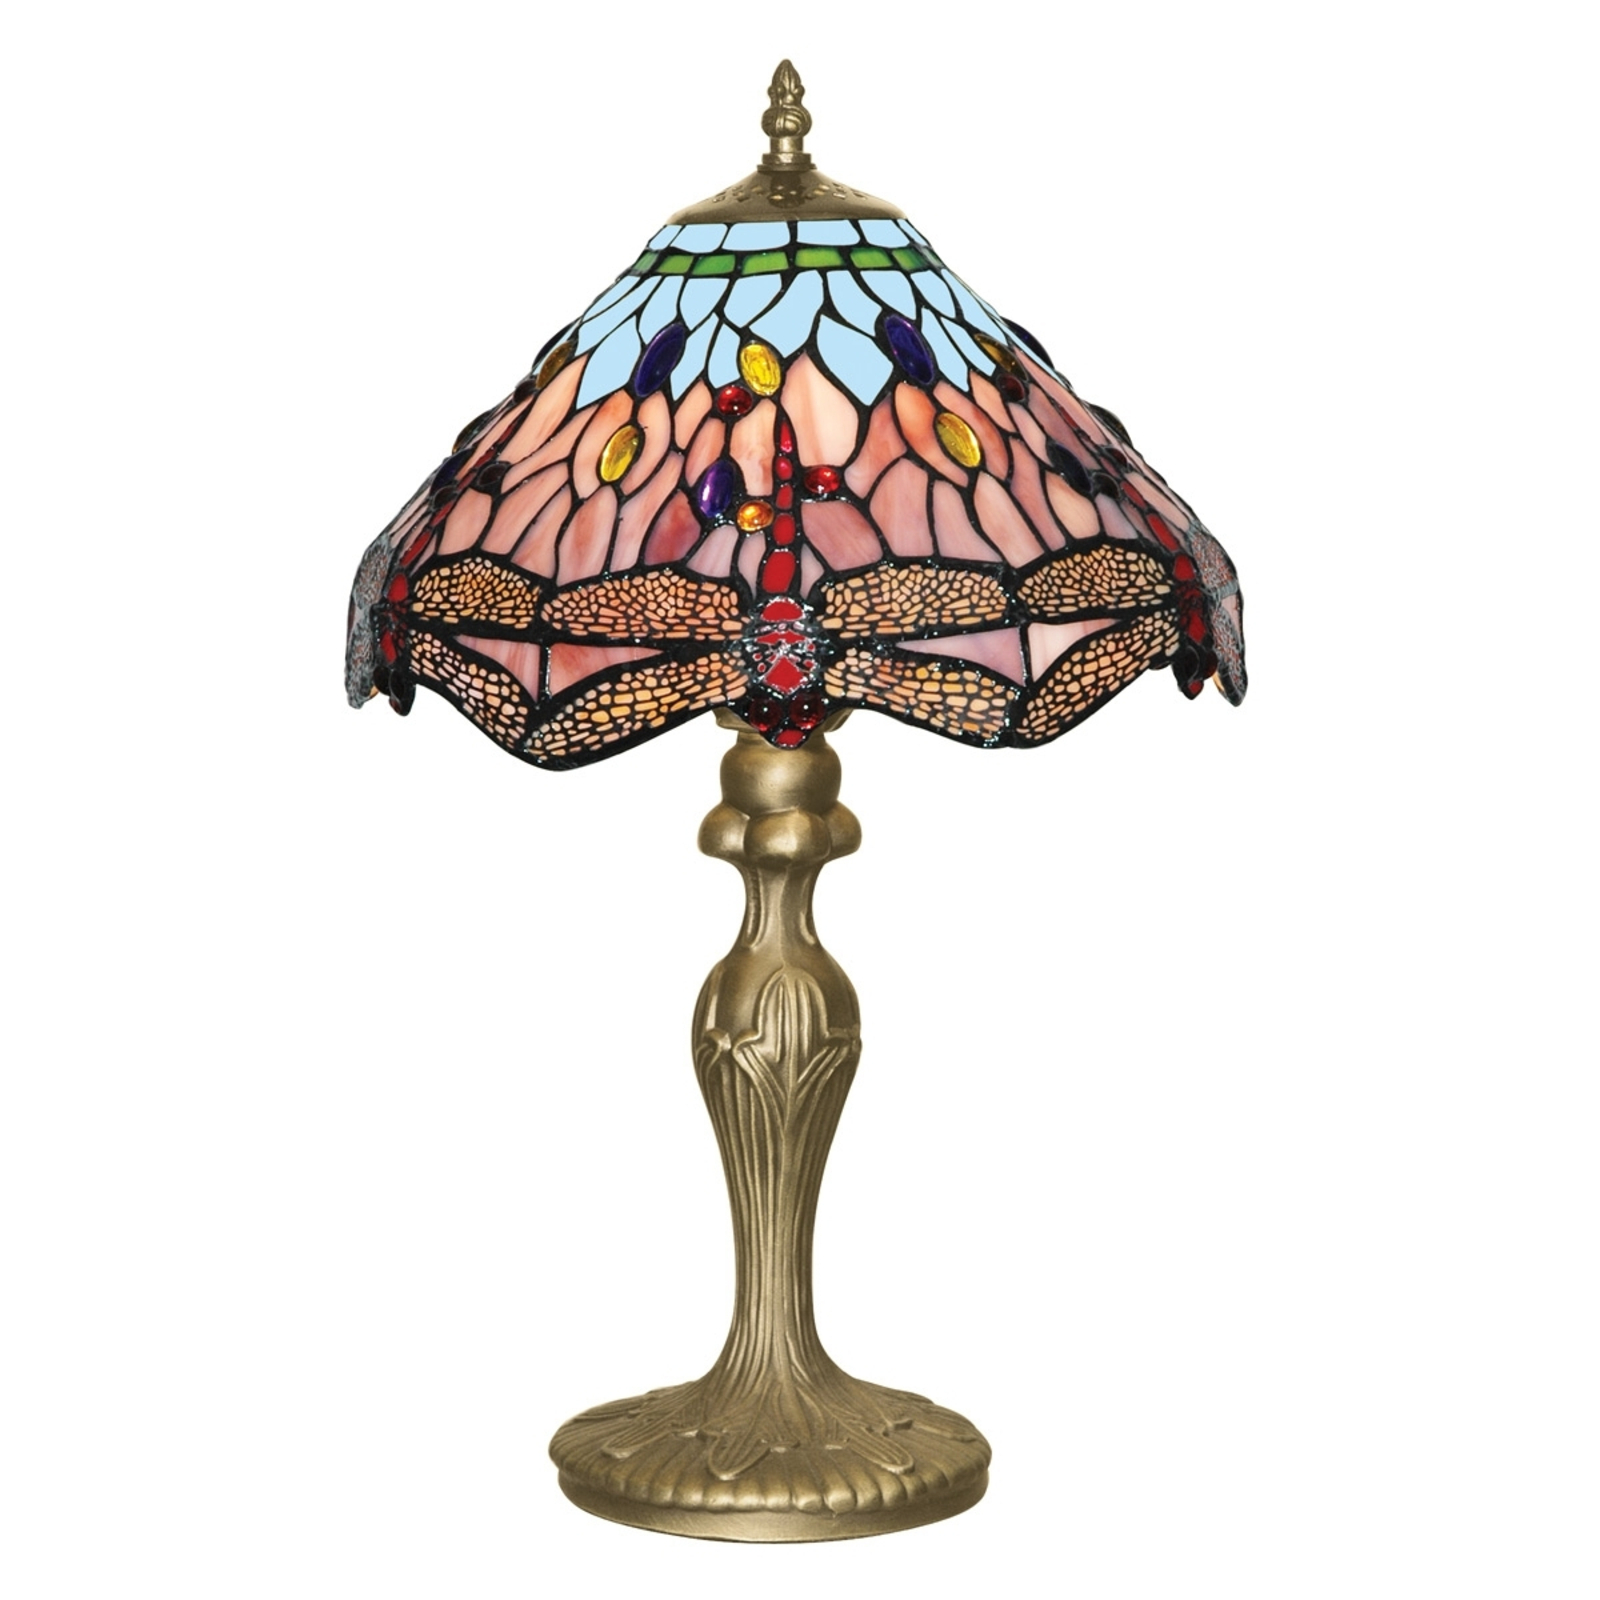 Dragonfly stolna lampa u Tiffany stilu